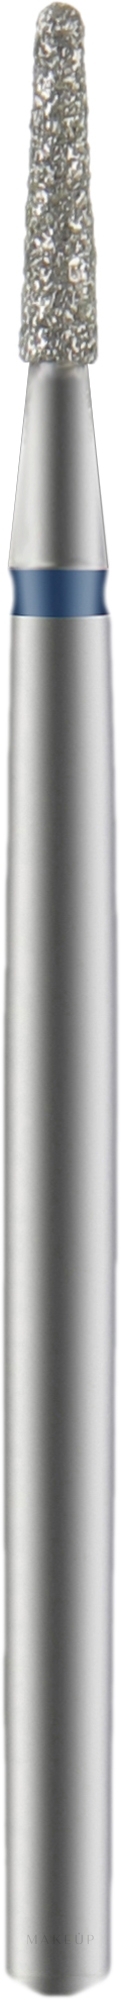 Diamantfräser Kegelstumpf blau Durchmesser 1,8 mm Arbeitsteil 8 mm - Staleks Pro — Bild 1 St.